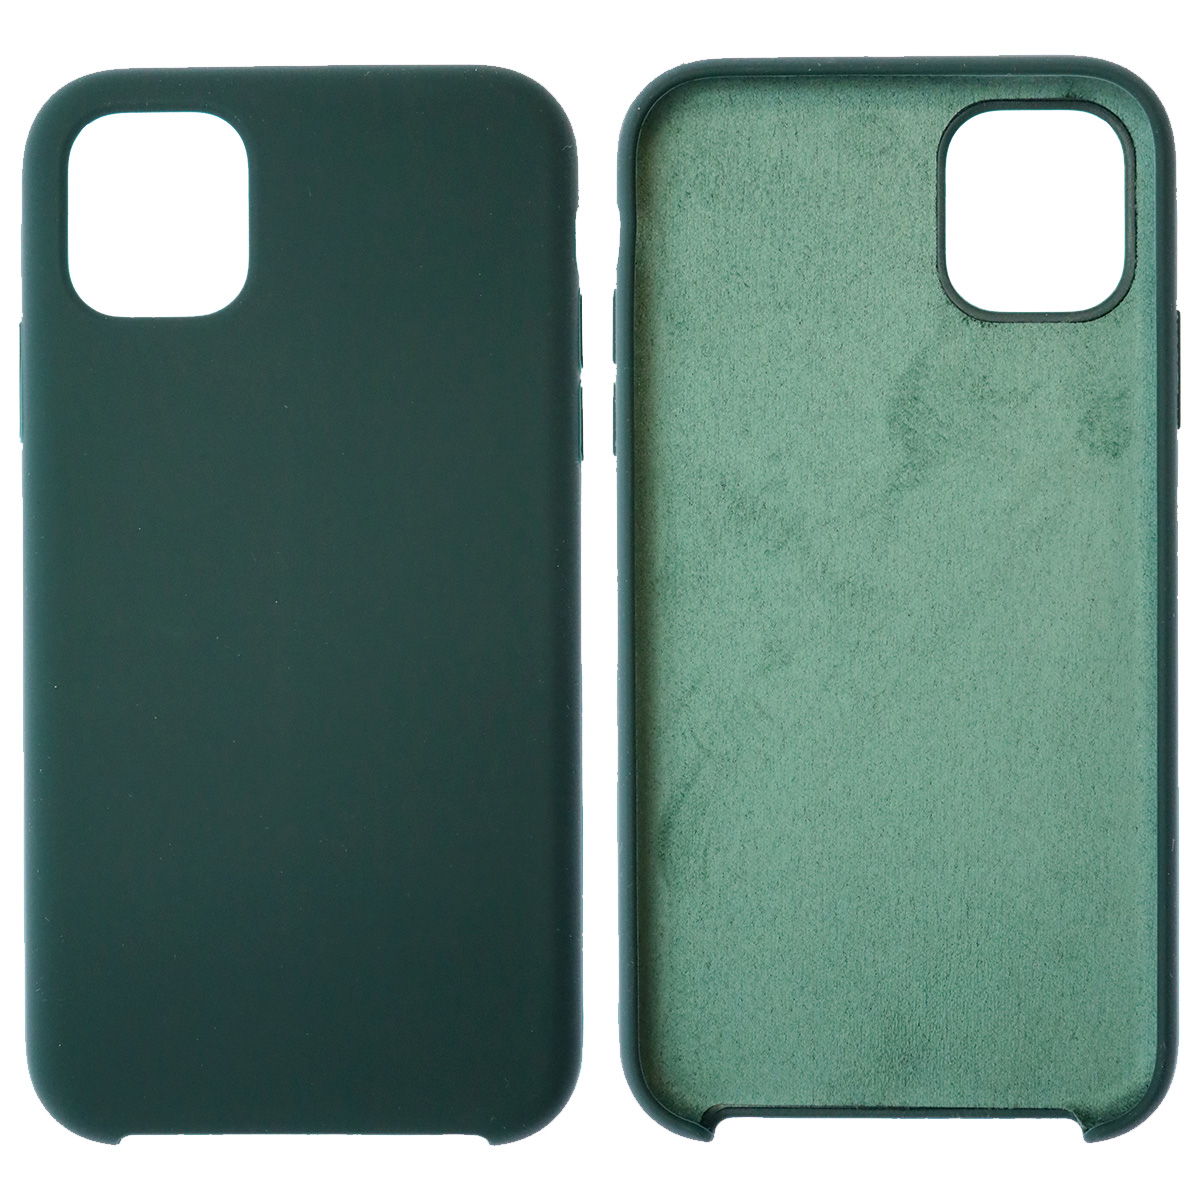 Чехол накладка Silicon Case для APPLE iPhone 11, силикон, бархат, цвет черно зеленый